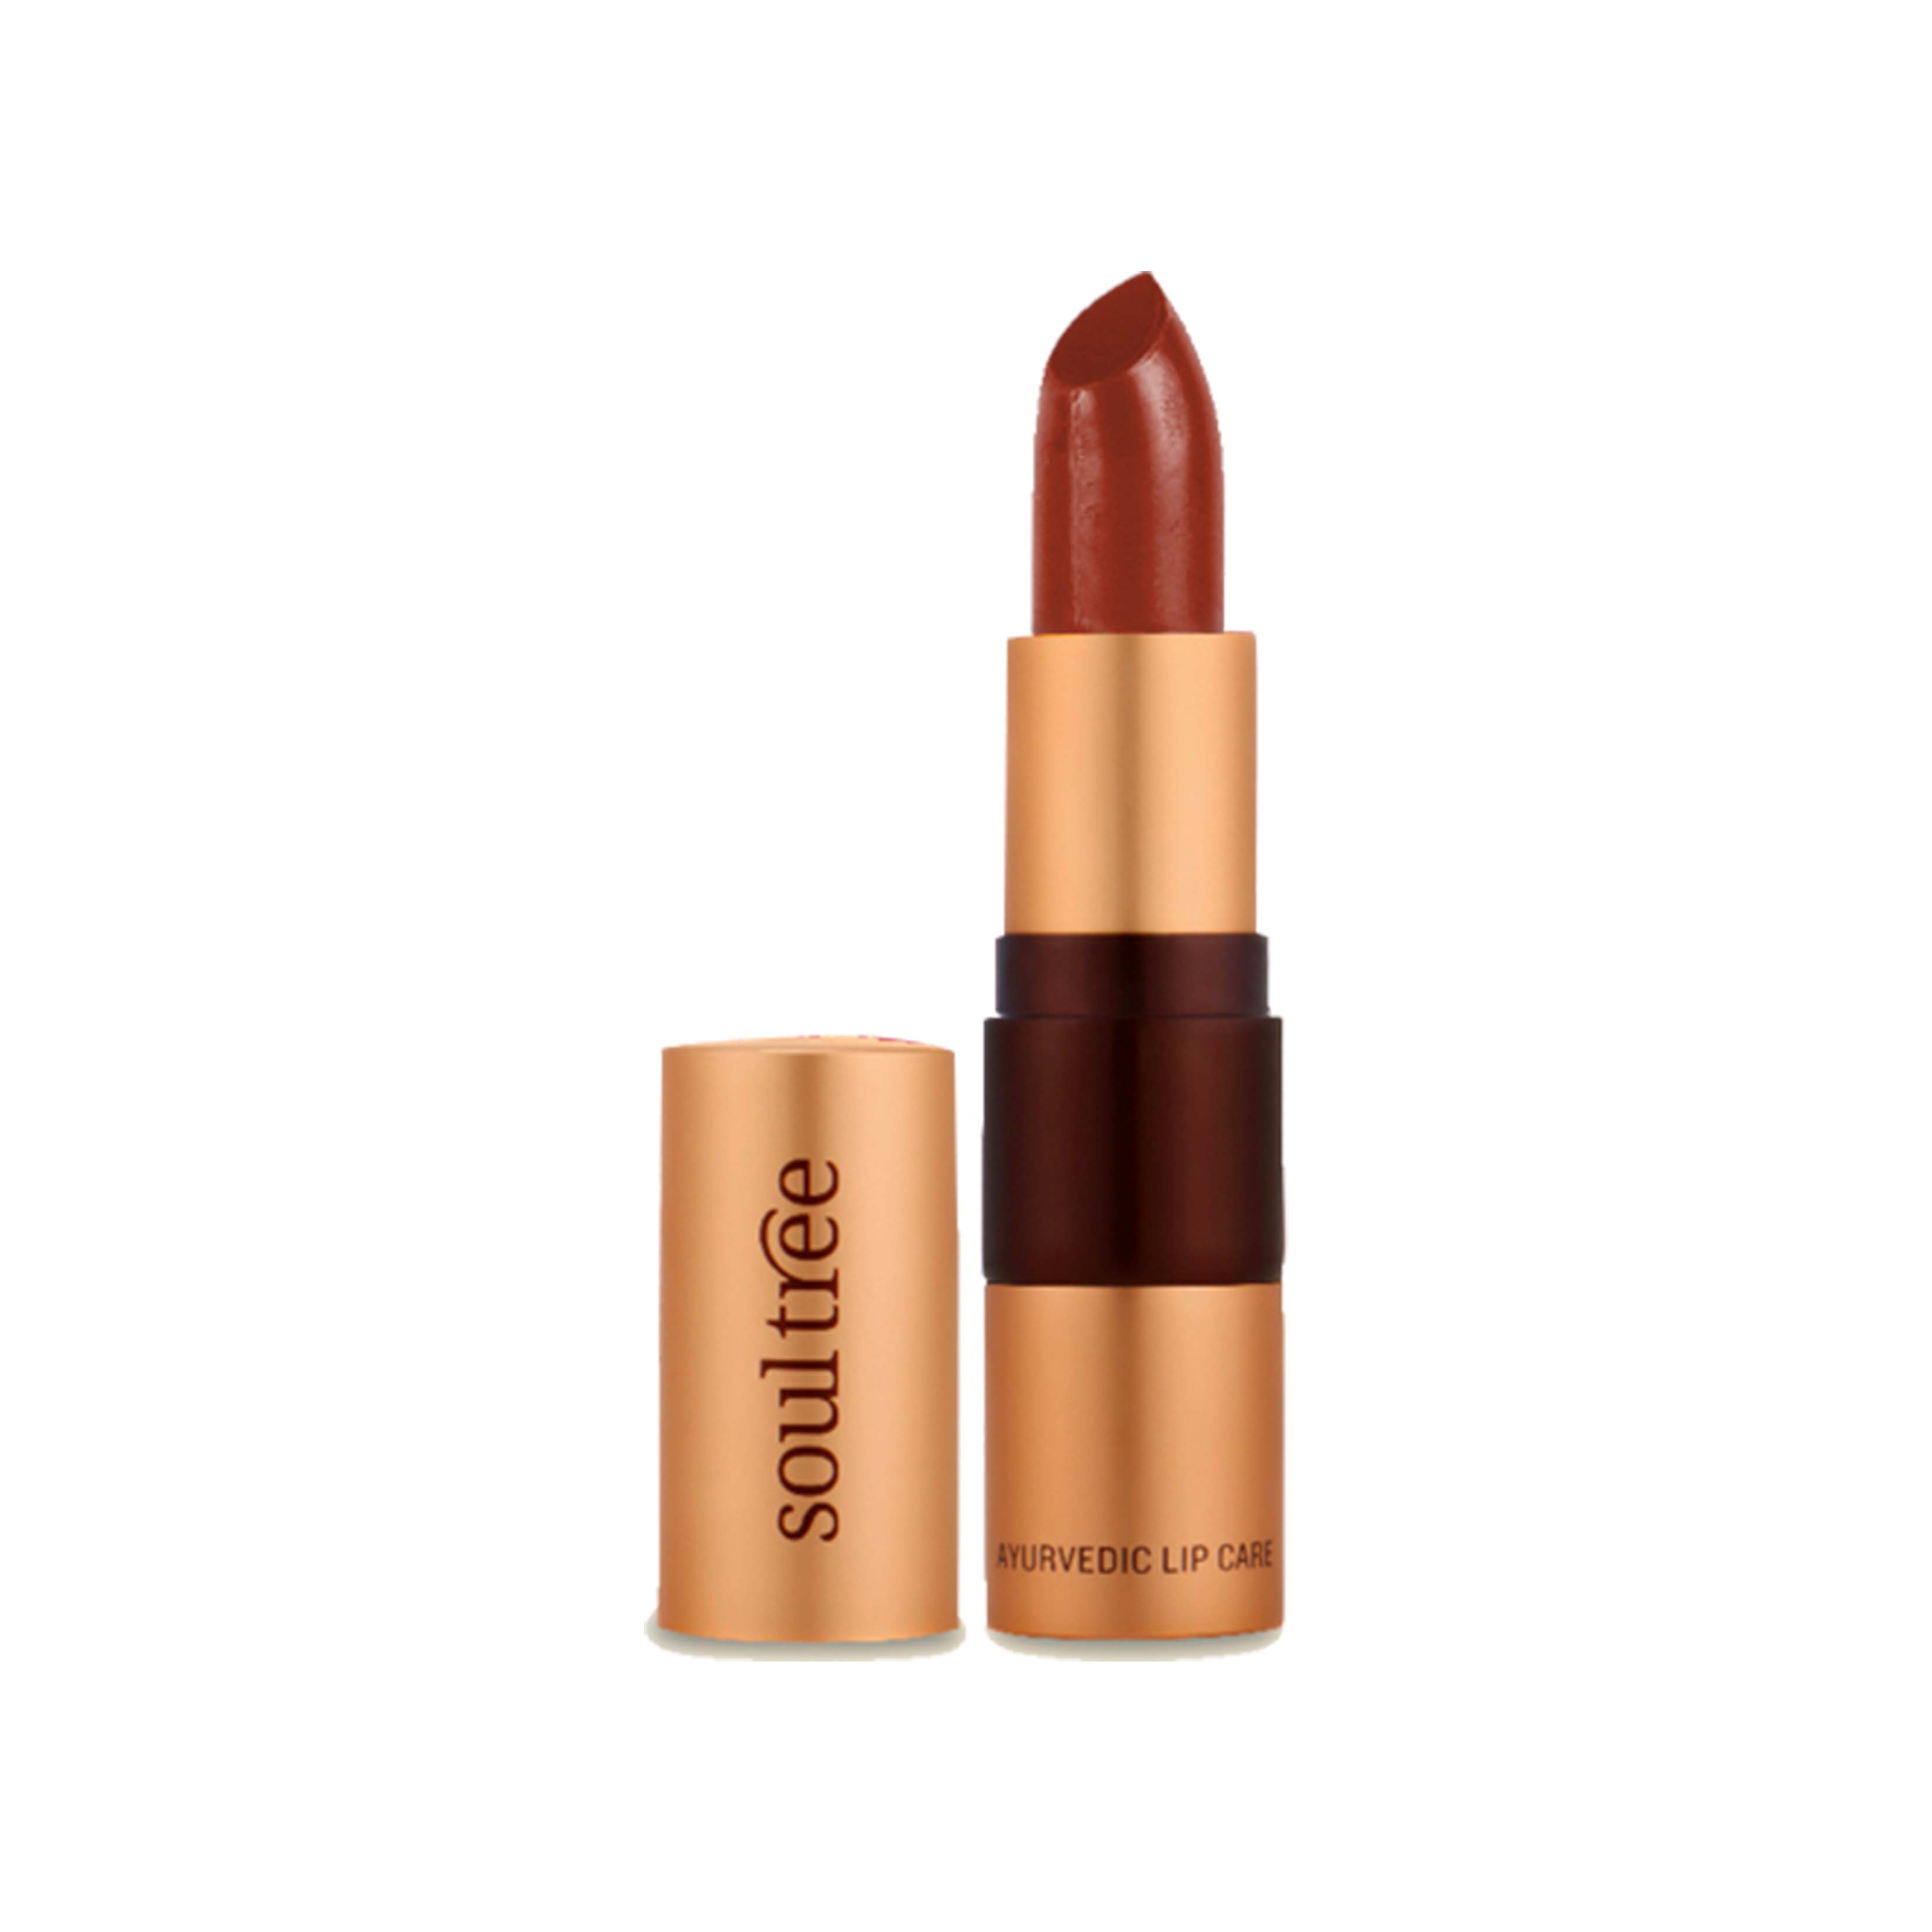 Lipstick Copper Mine 213 - SoulTree